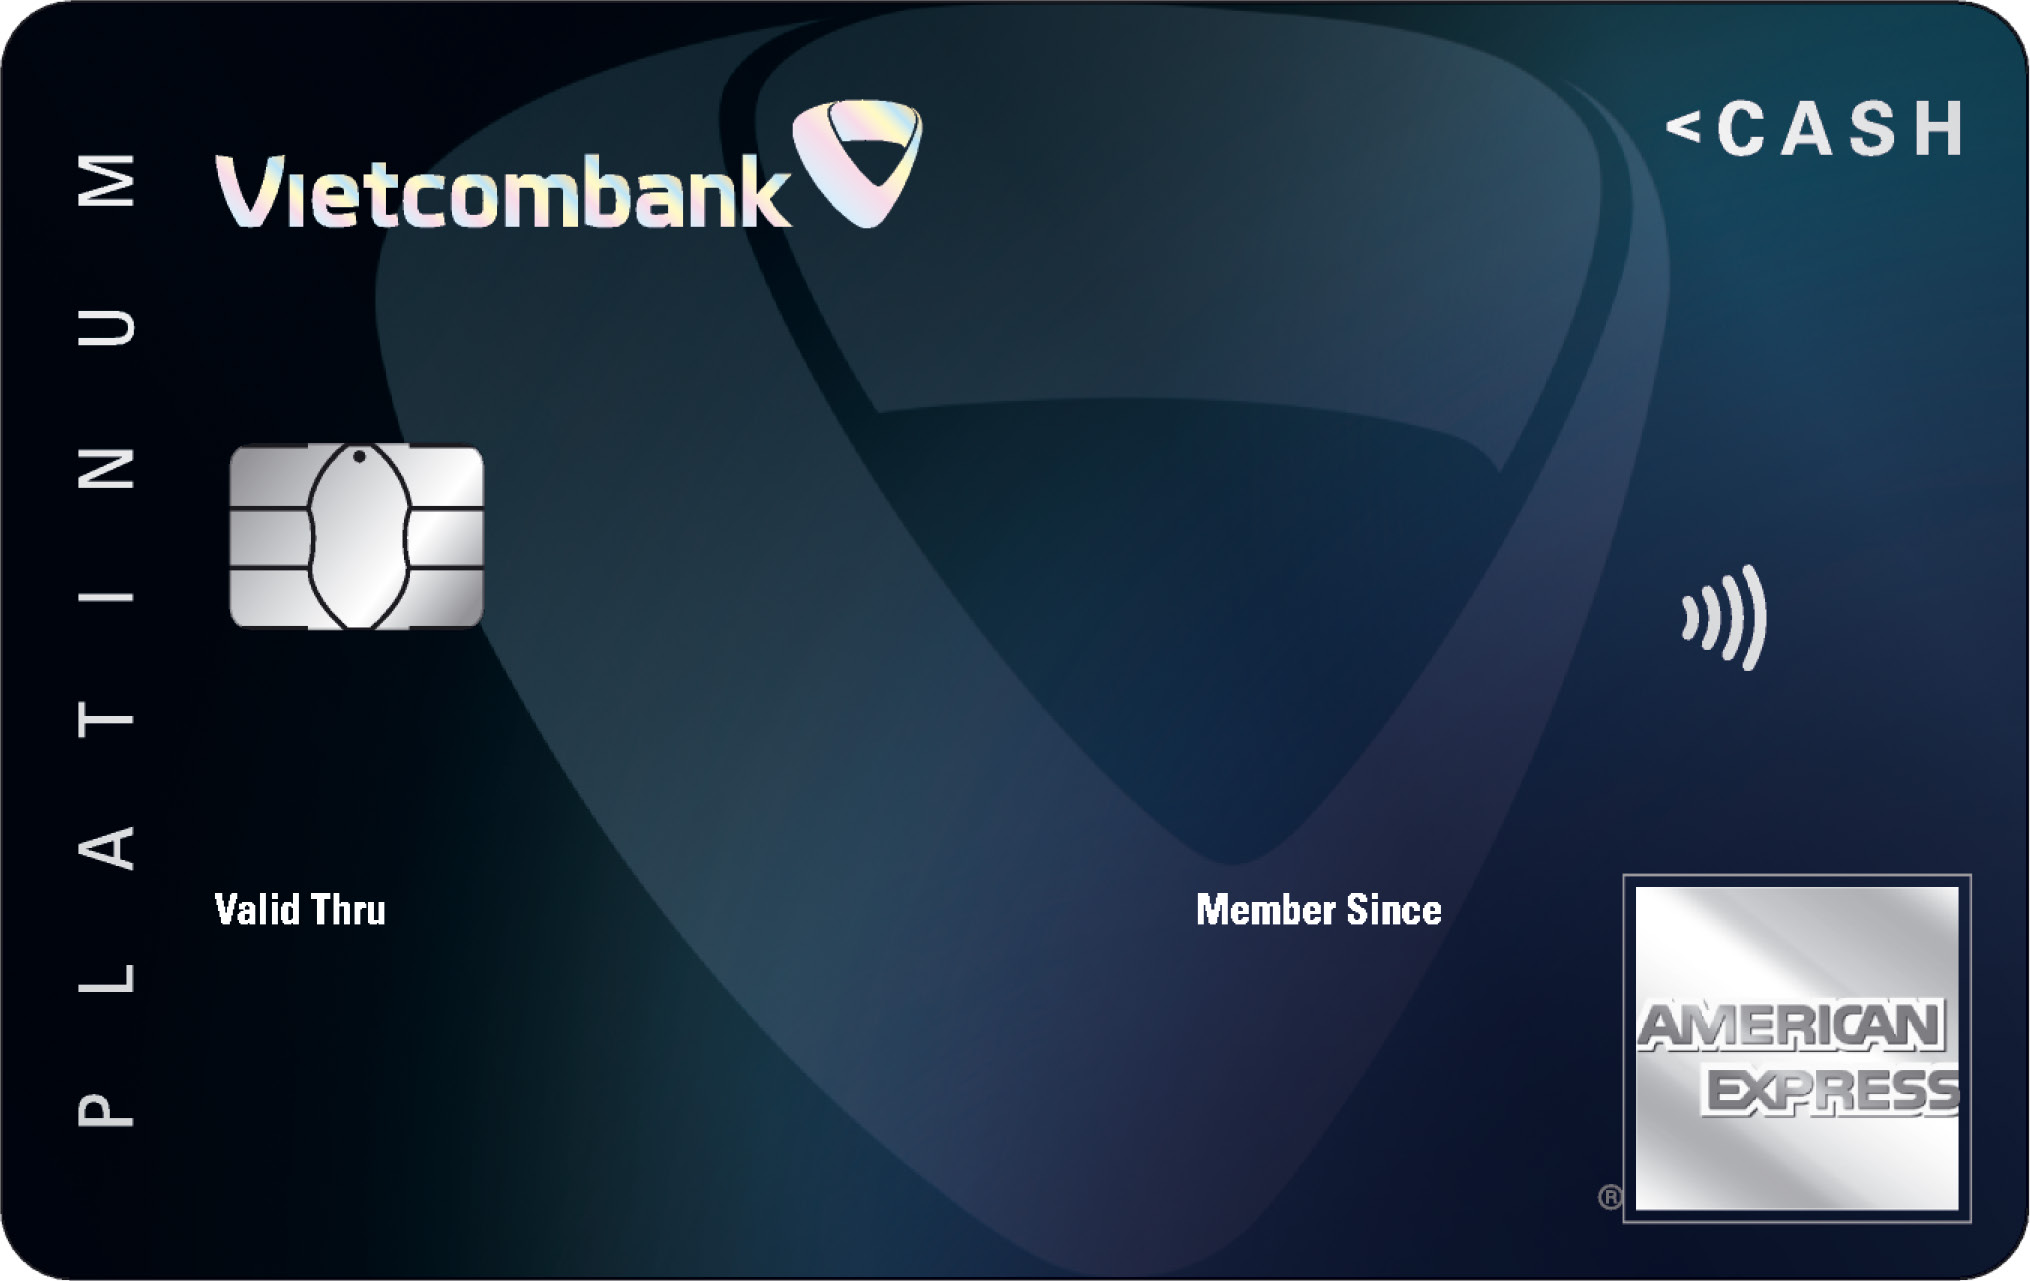 Vietcombank Cashplus Platinum American Express